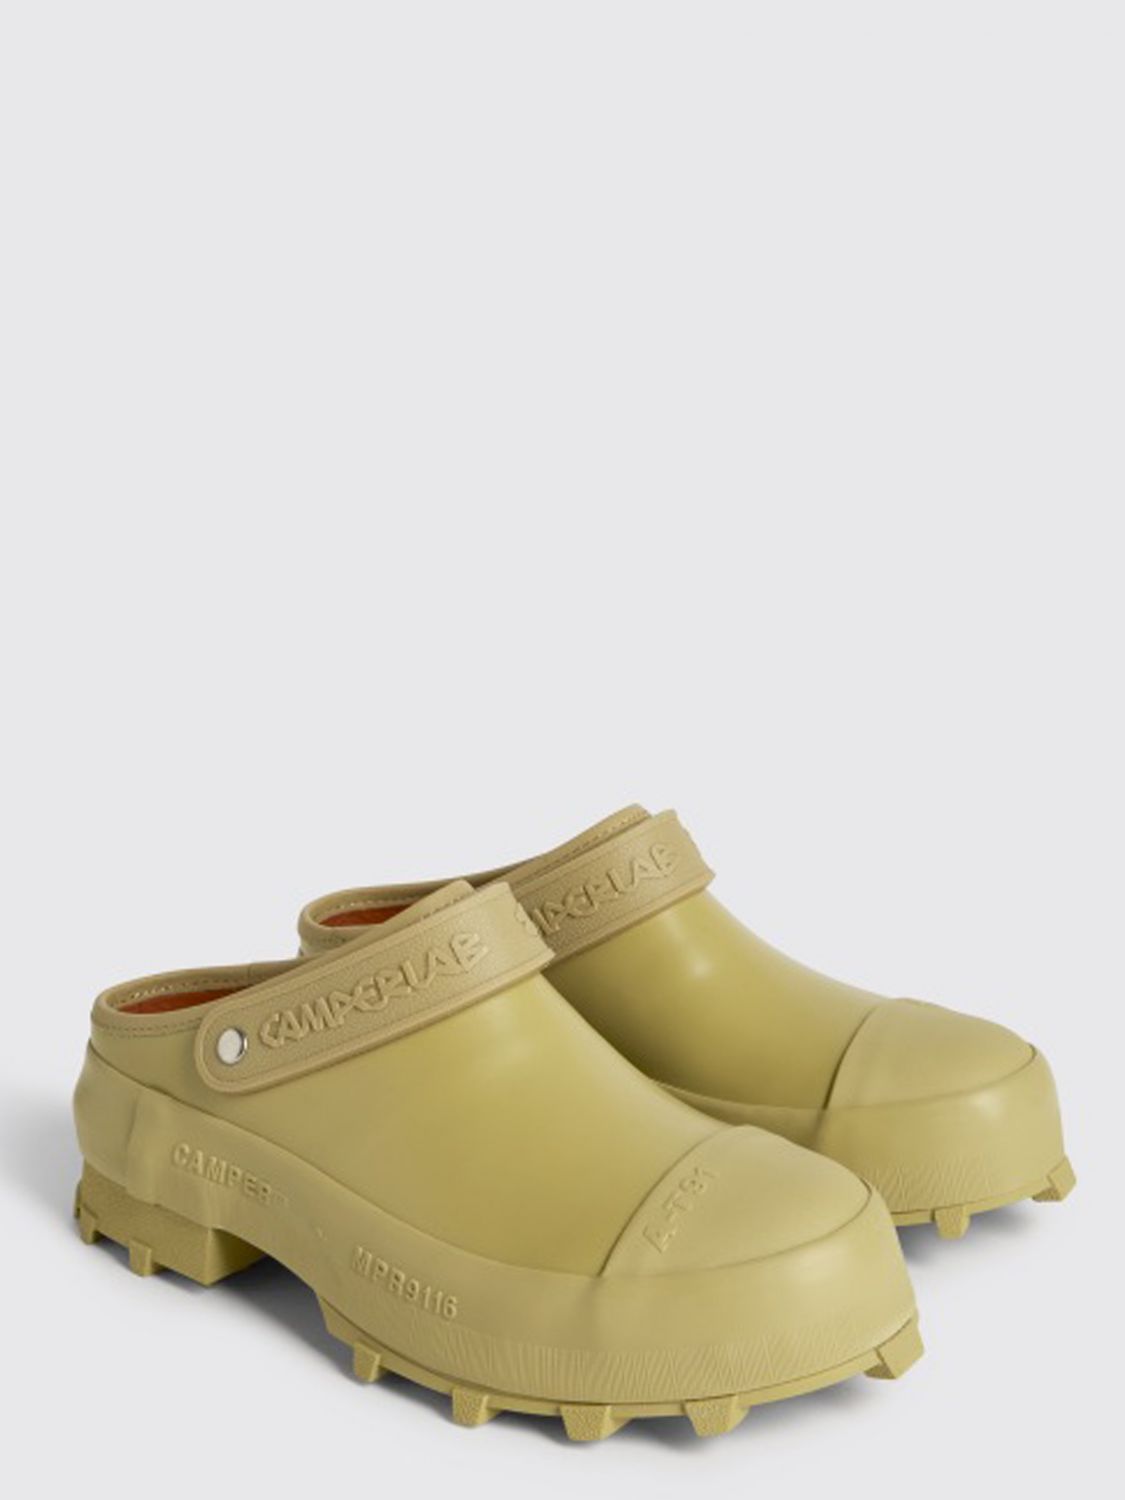 CAMPERLAB: Traktori leather sabots - Beige | Camperlab flat shoes ...